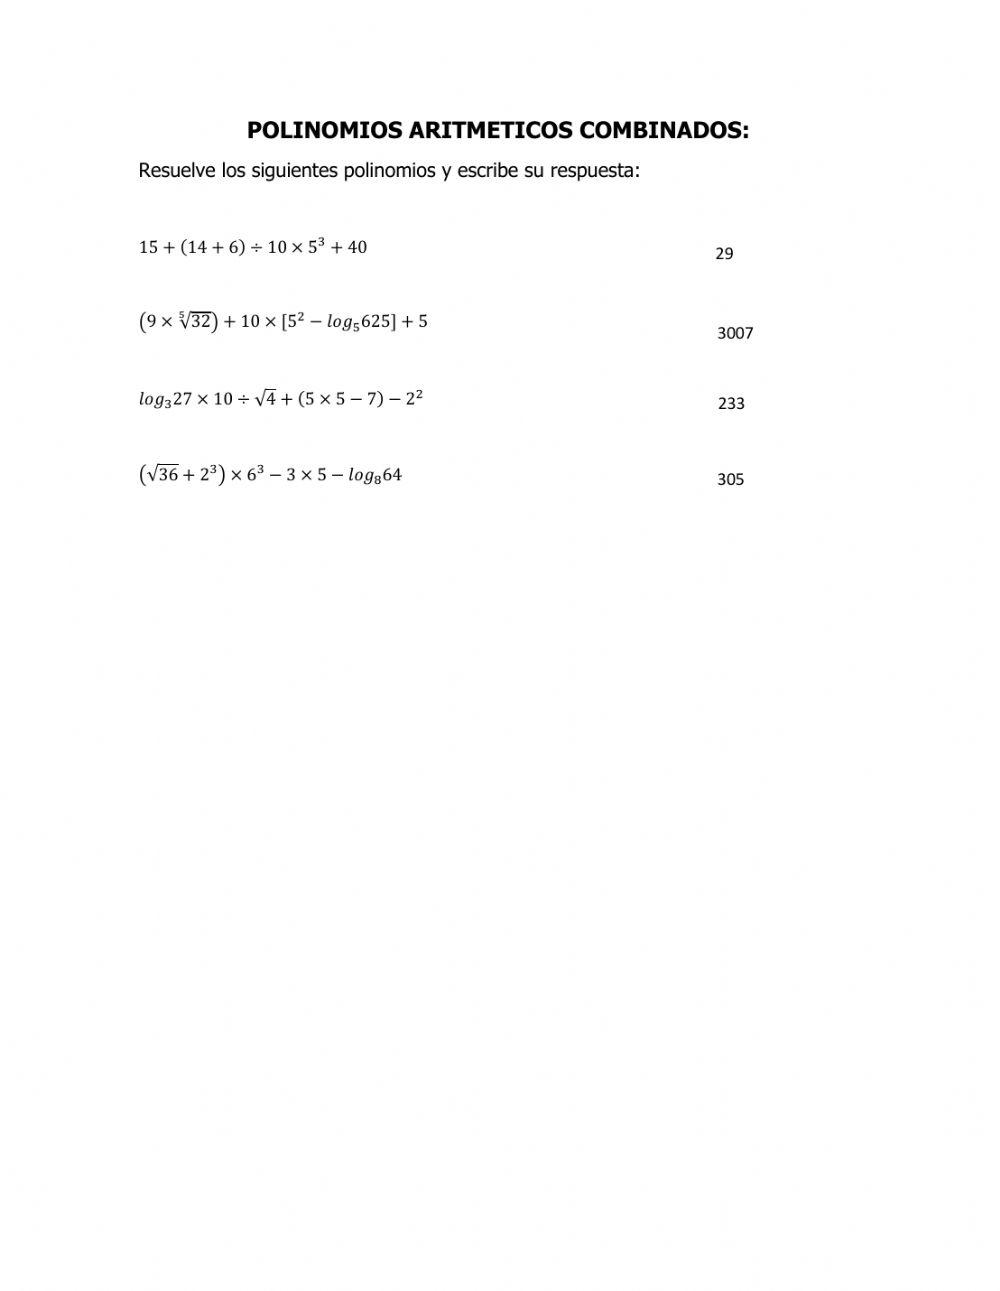 Polinomios aritmeticos combinados